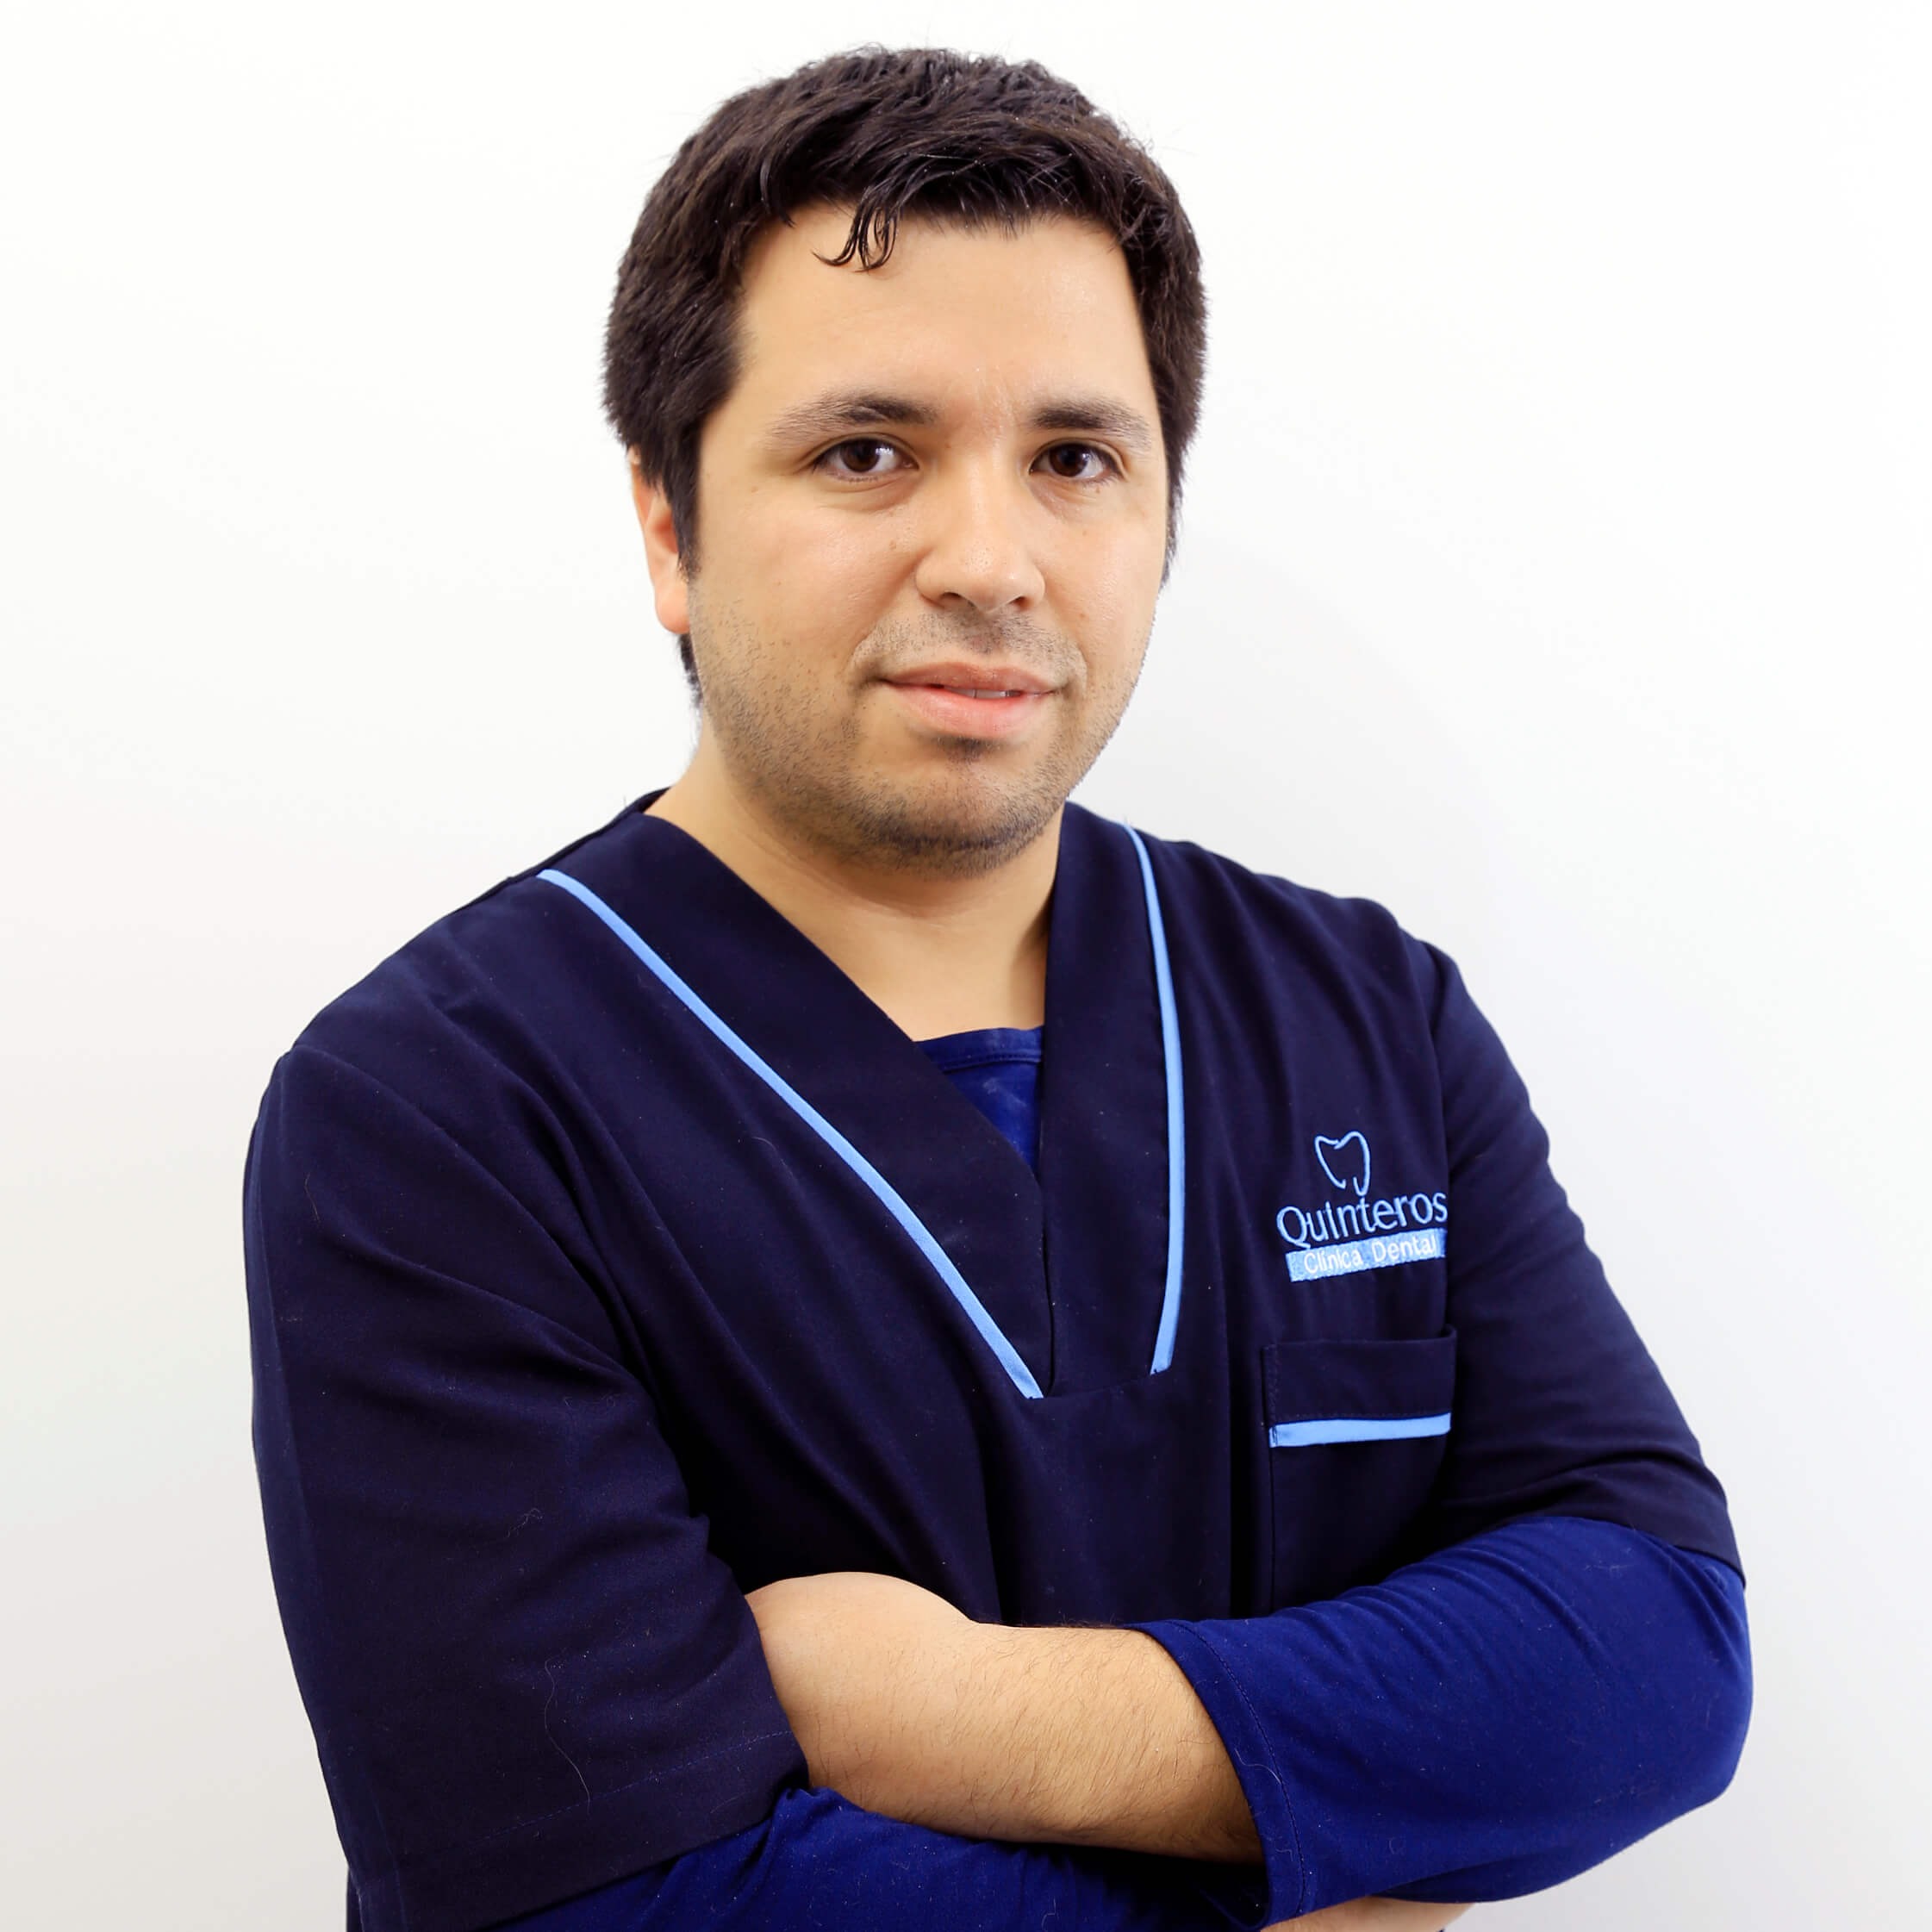 Dr. Bastian Herrera Castillo